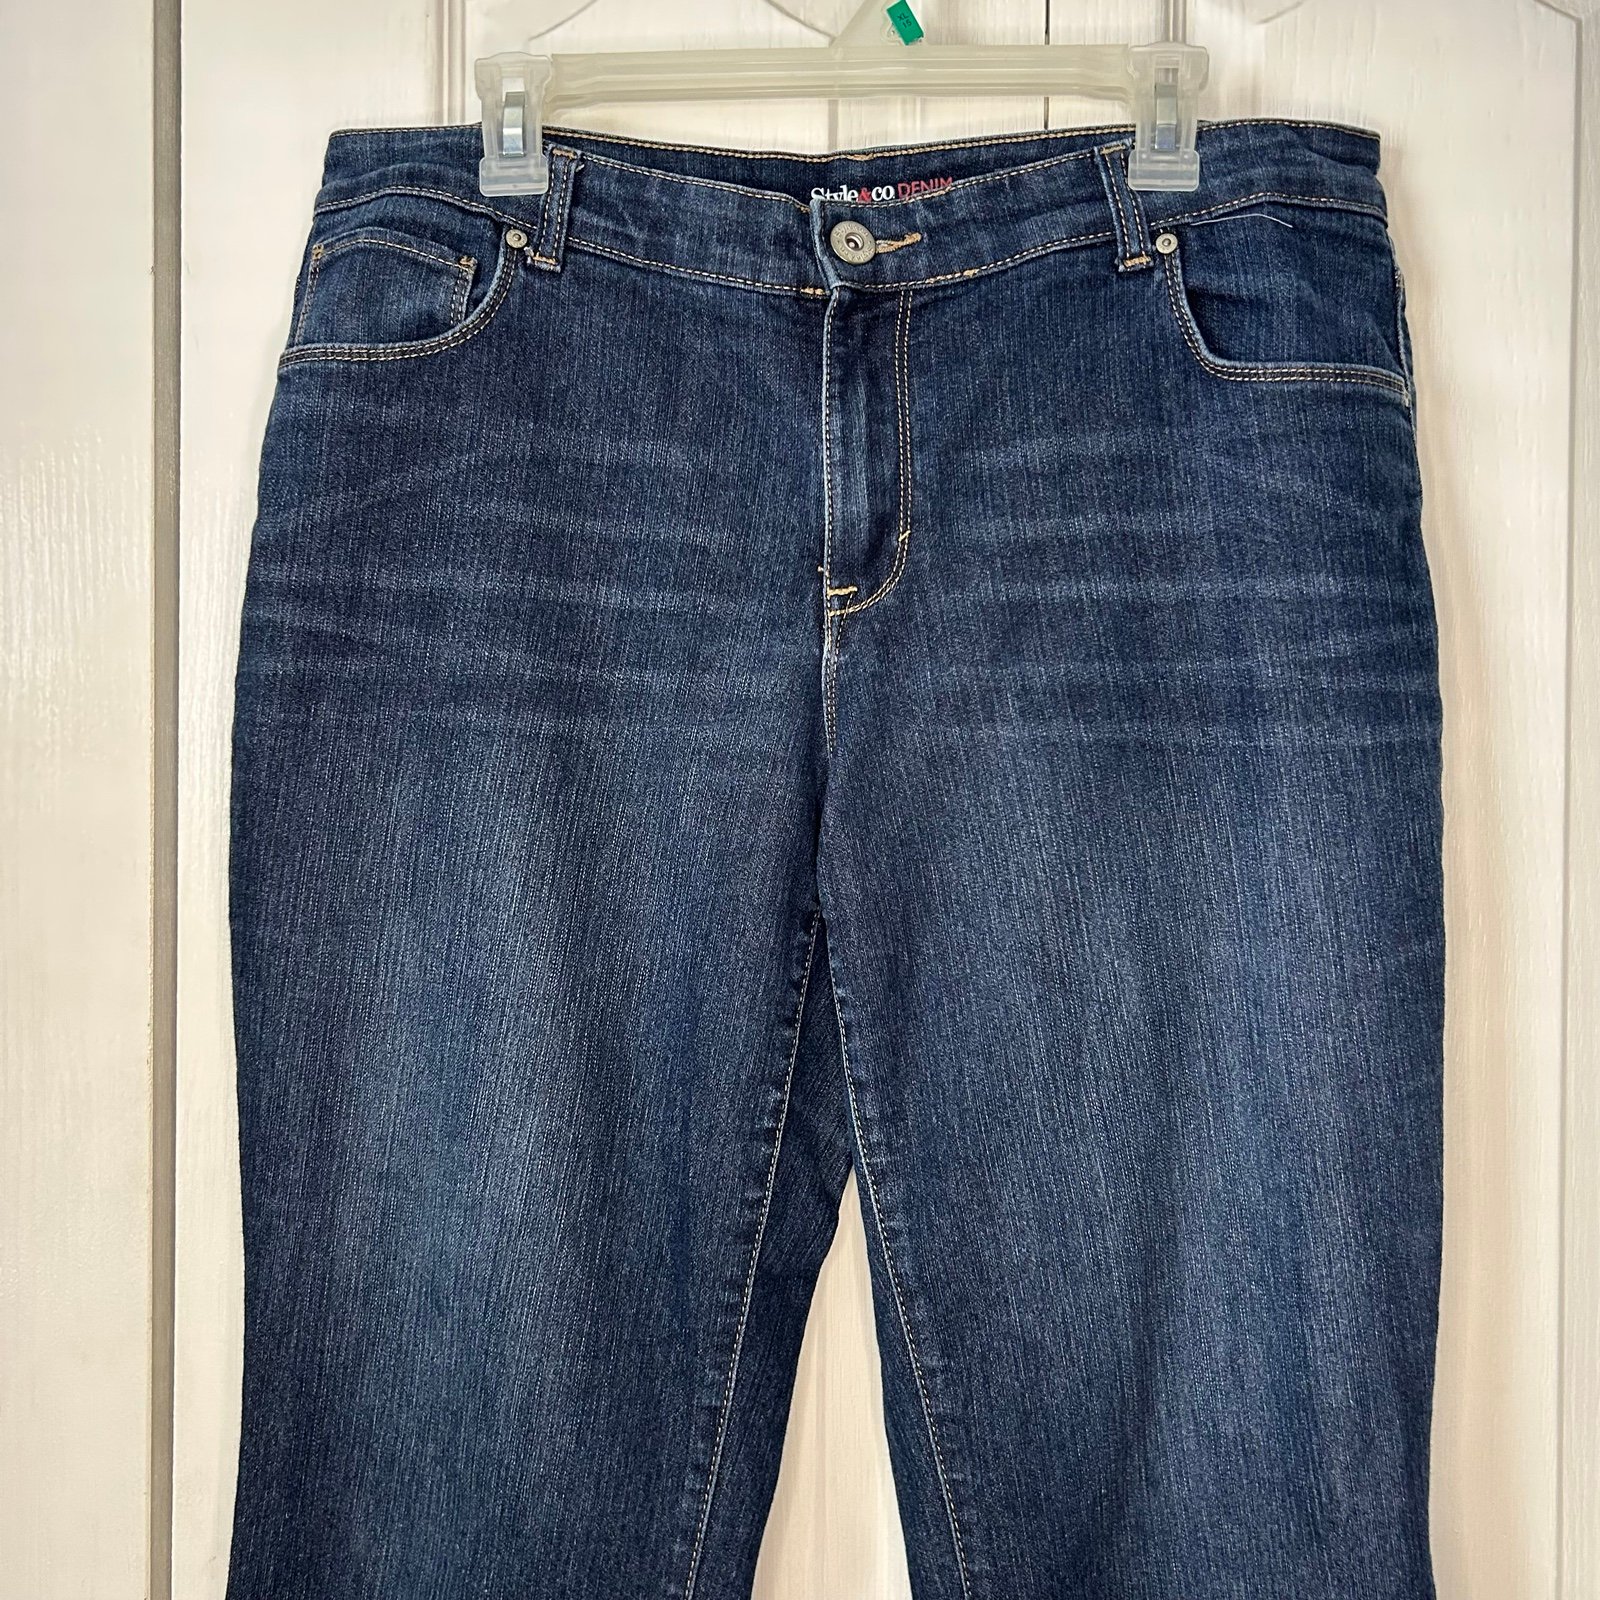 floor price Style & Co. women’s denim blue, Jean boyfriend, jeans, size 16 W NFaVrT5LM Cheap